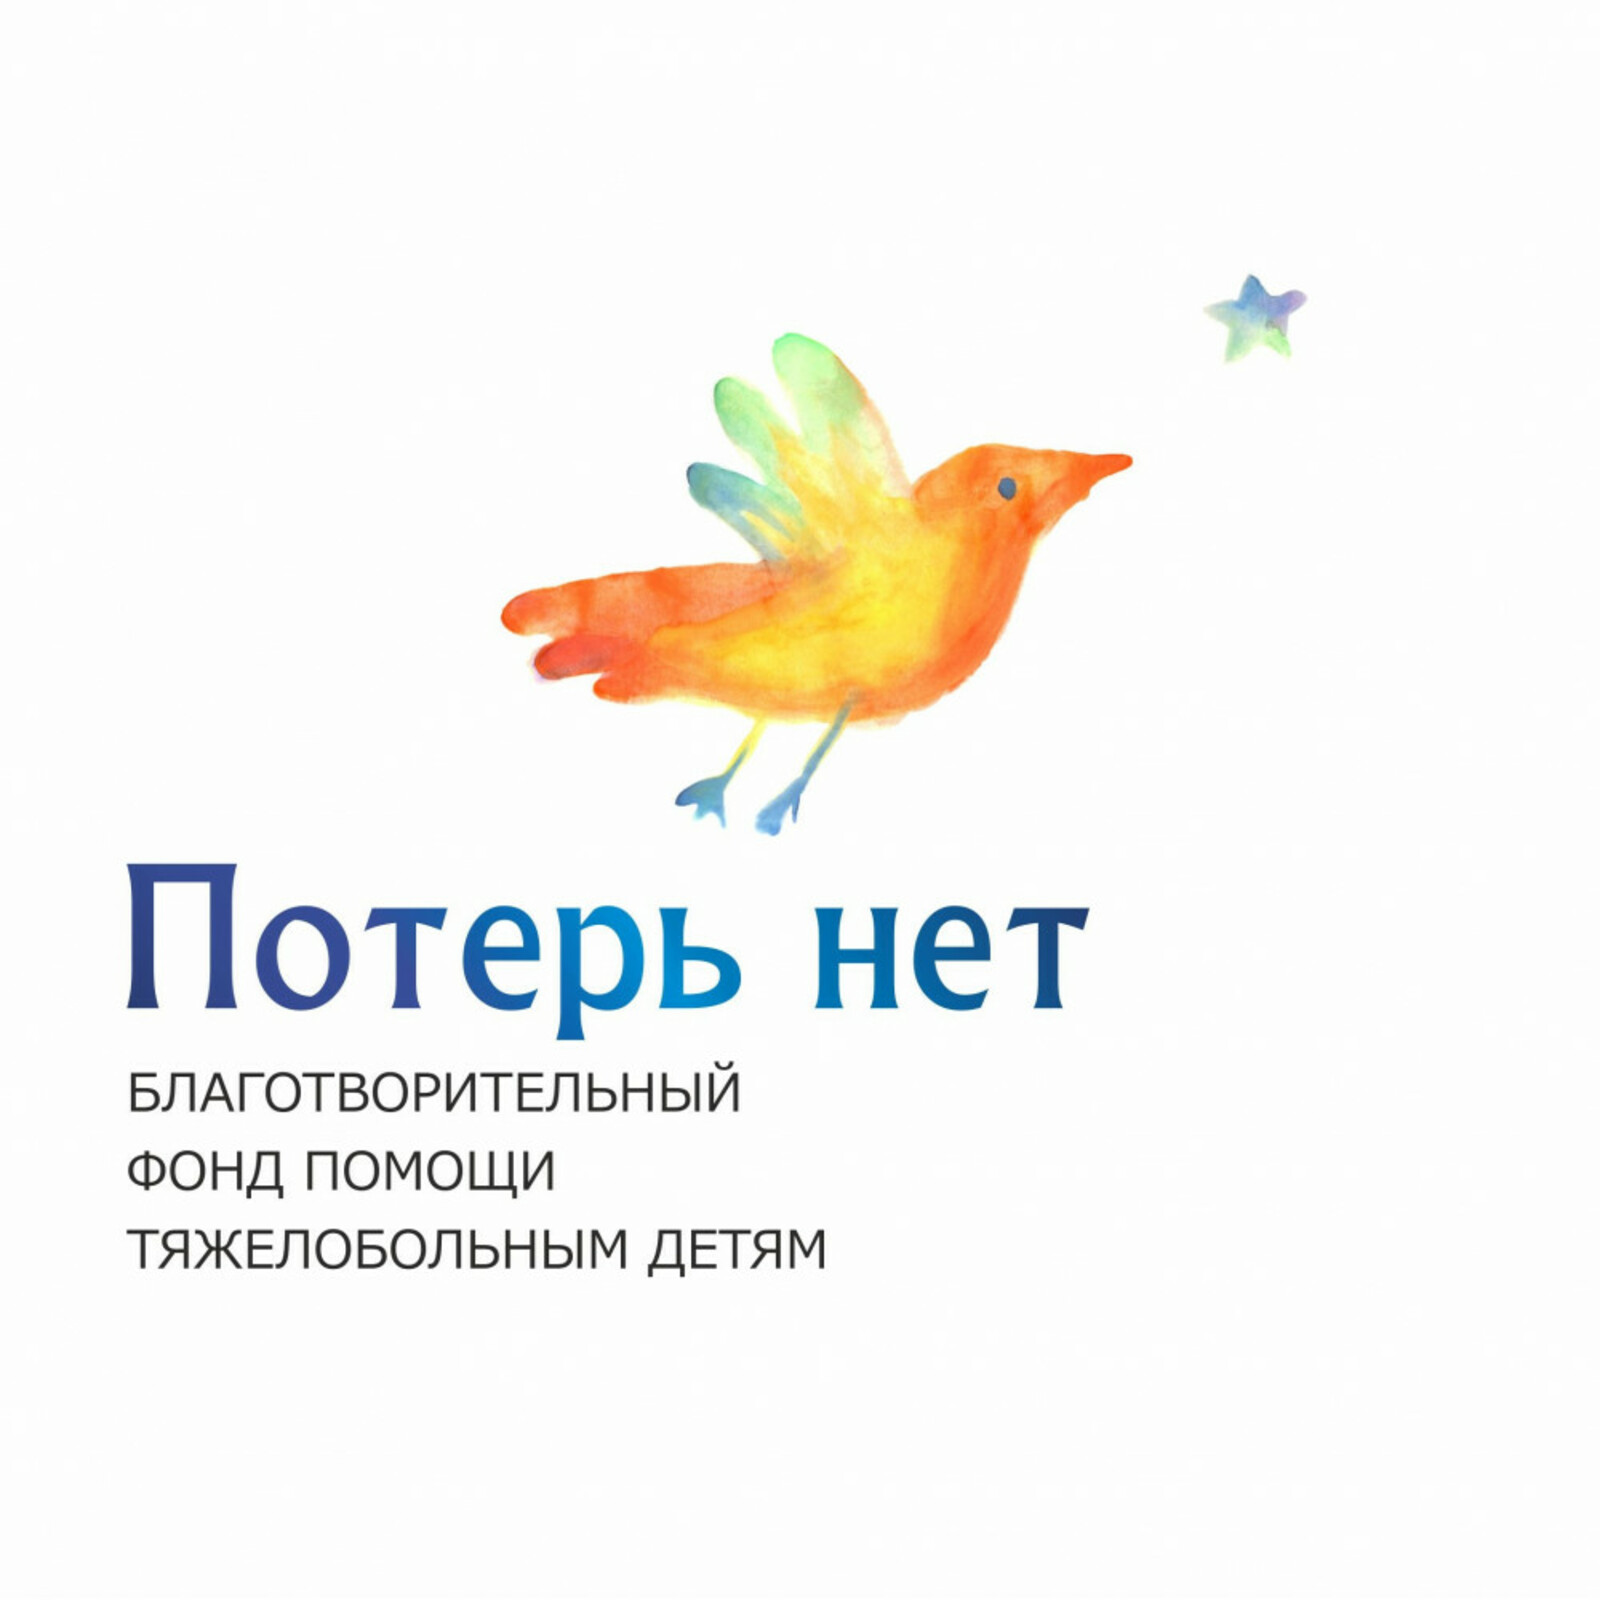 Публичный отчет фонда «Потерь нет» признан лучшим в Башкирии